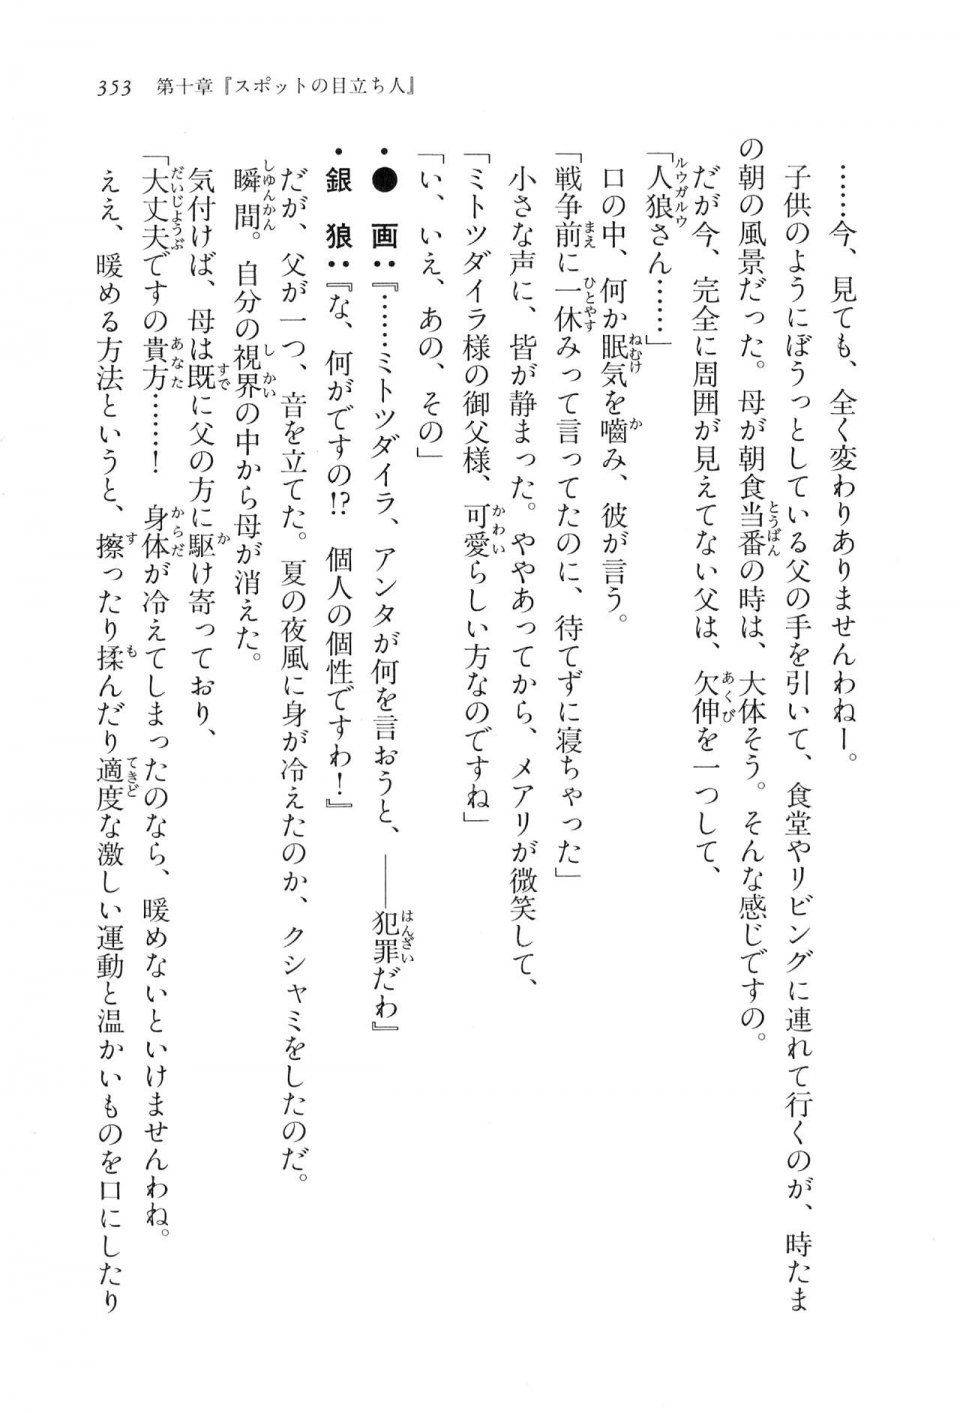 Kyoukai Senjou no Horizon LN Vol 16(7A) - Photo #353